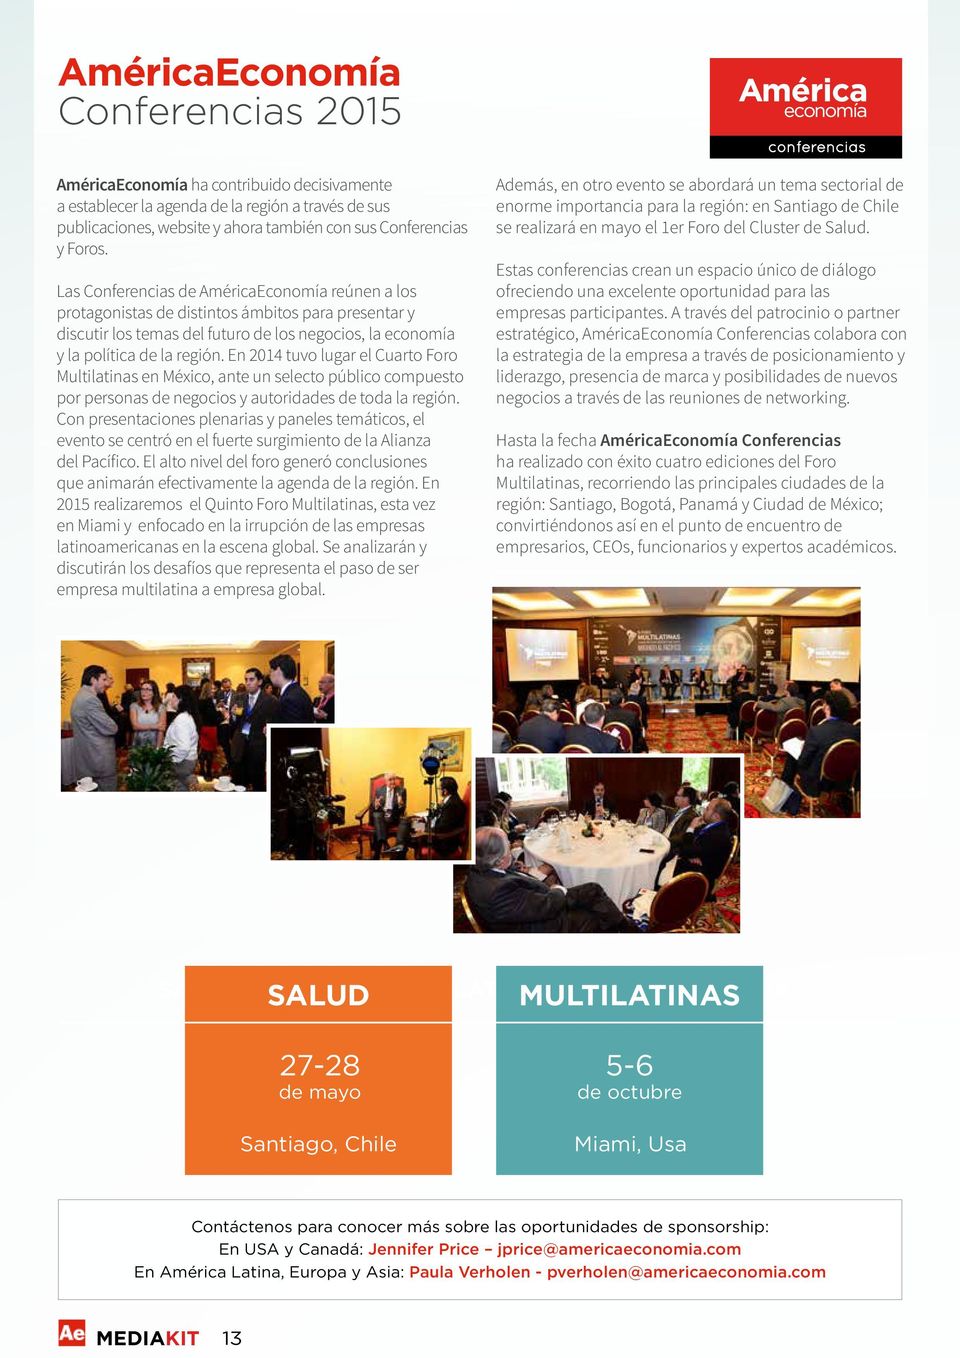 En 2014 tuvo lugar el Cuarto Foro Multilatinas en México, ante un selecto público compuesto por personas de negocios y autoridades de toda la región.